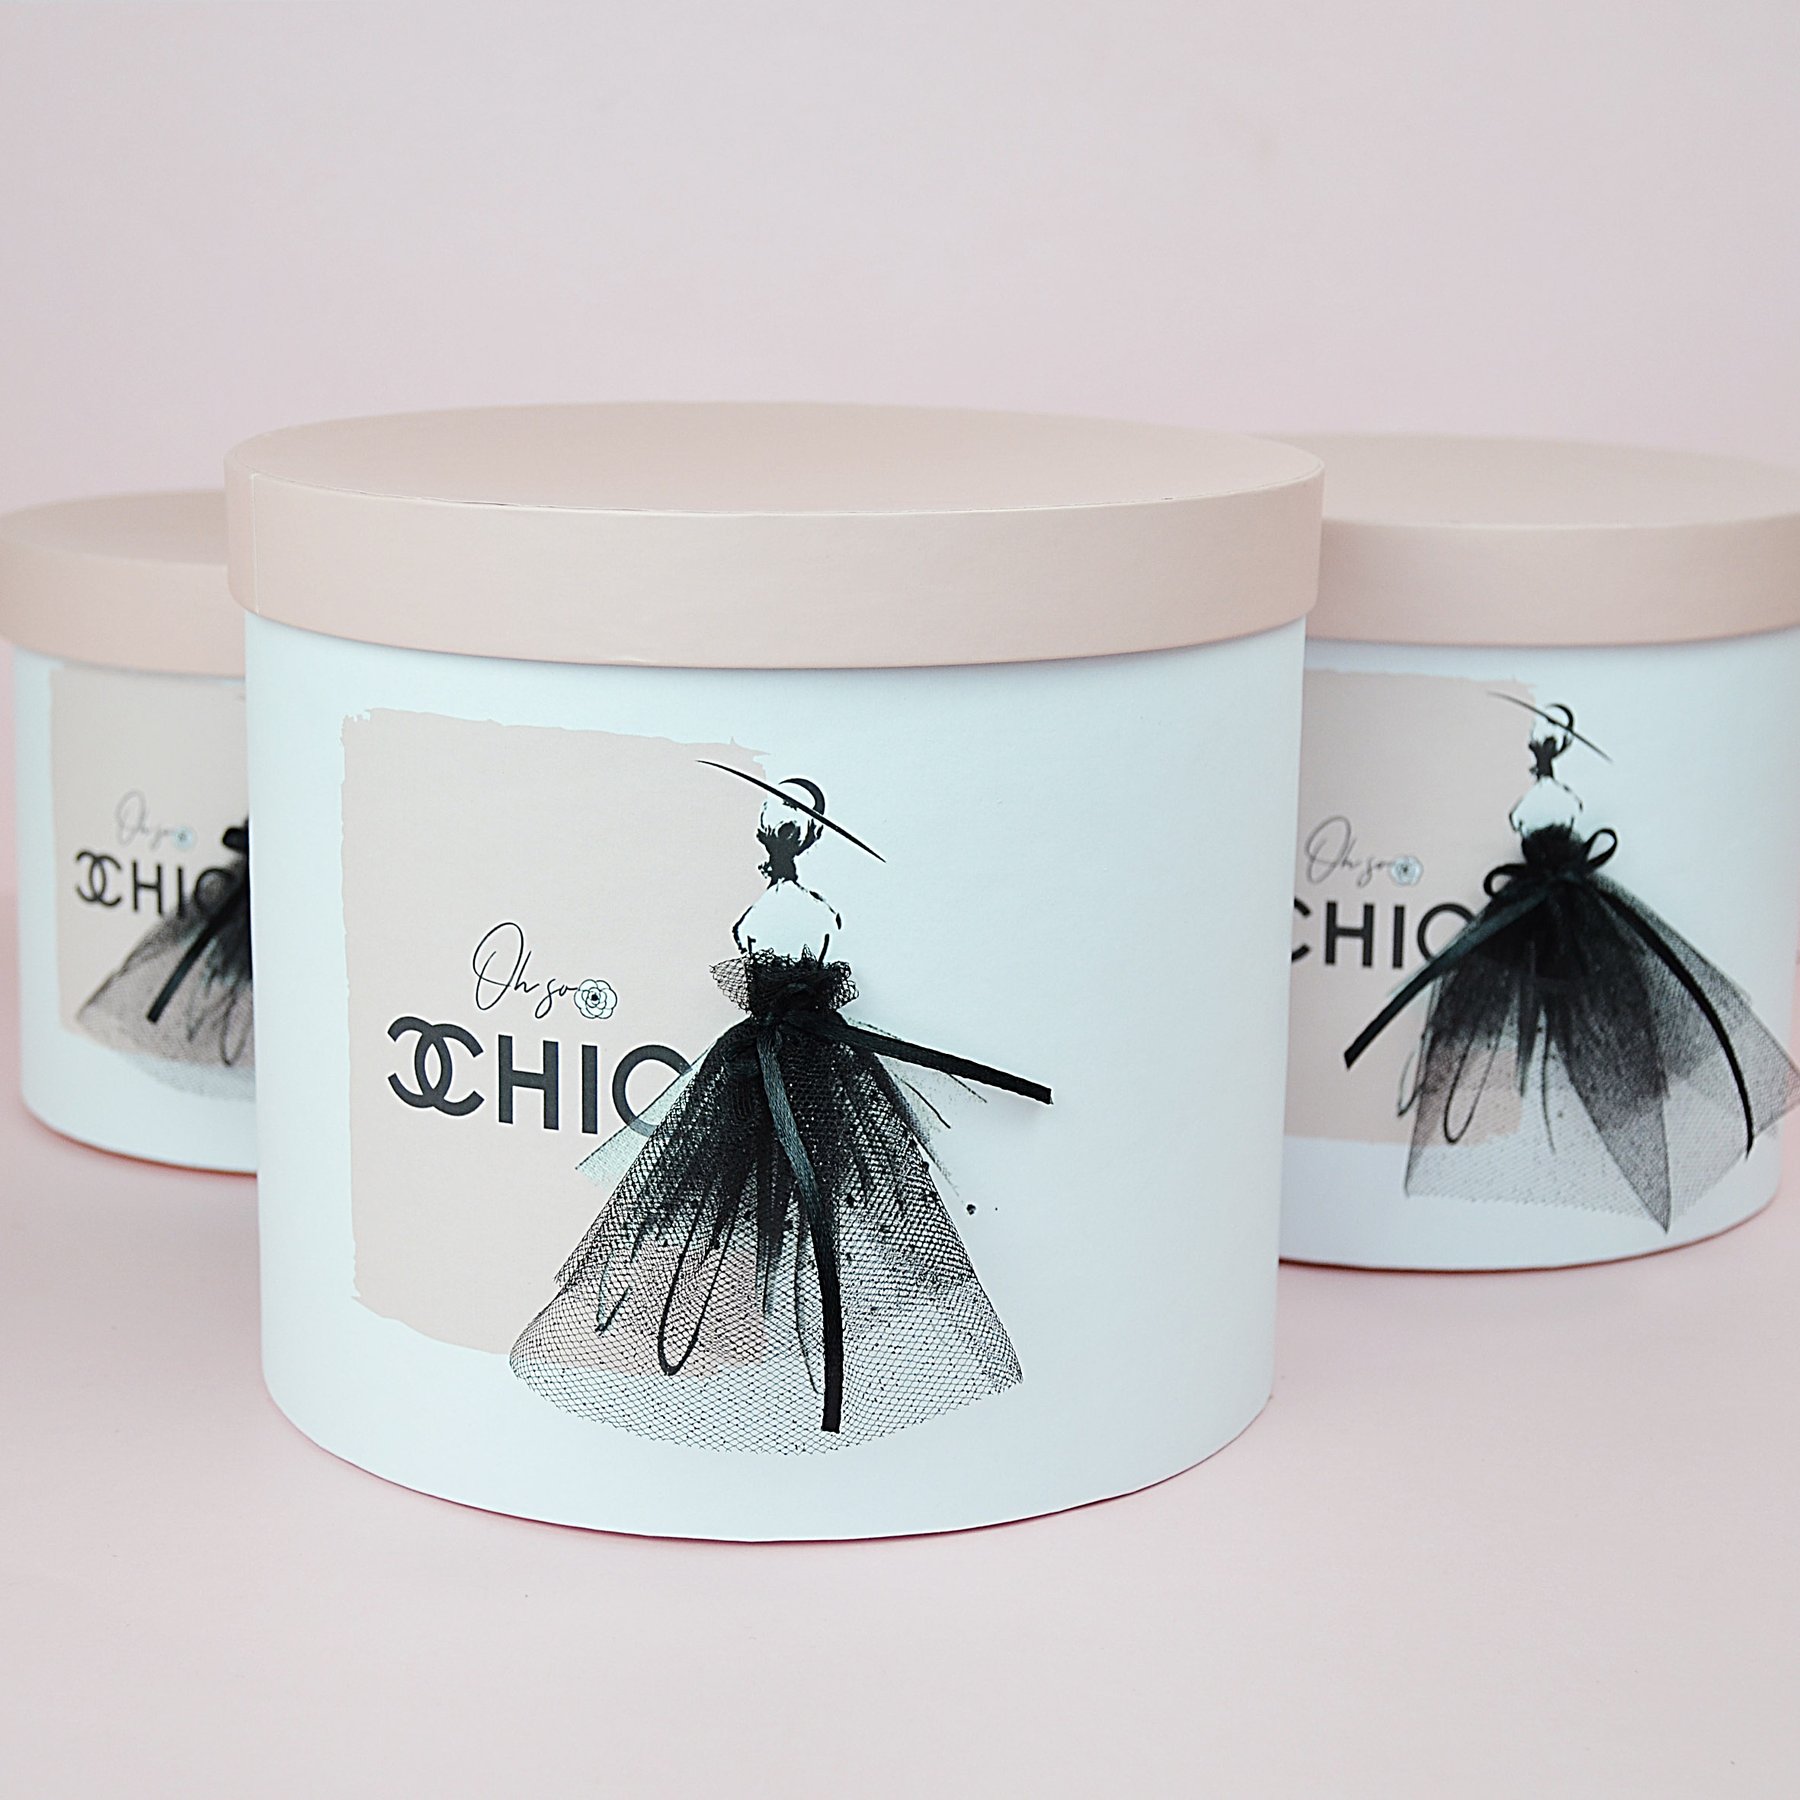 Набір шляпних коробок з кришками "Osho Chic" - з декором